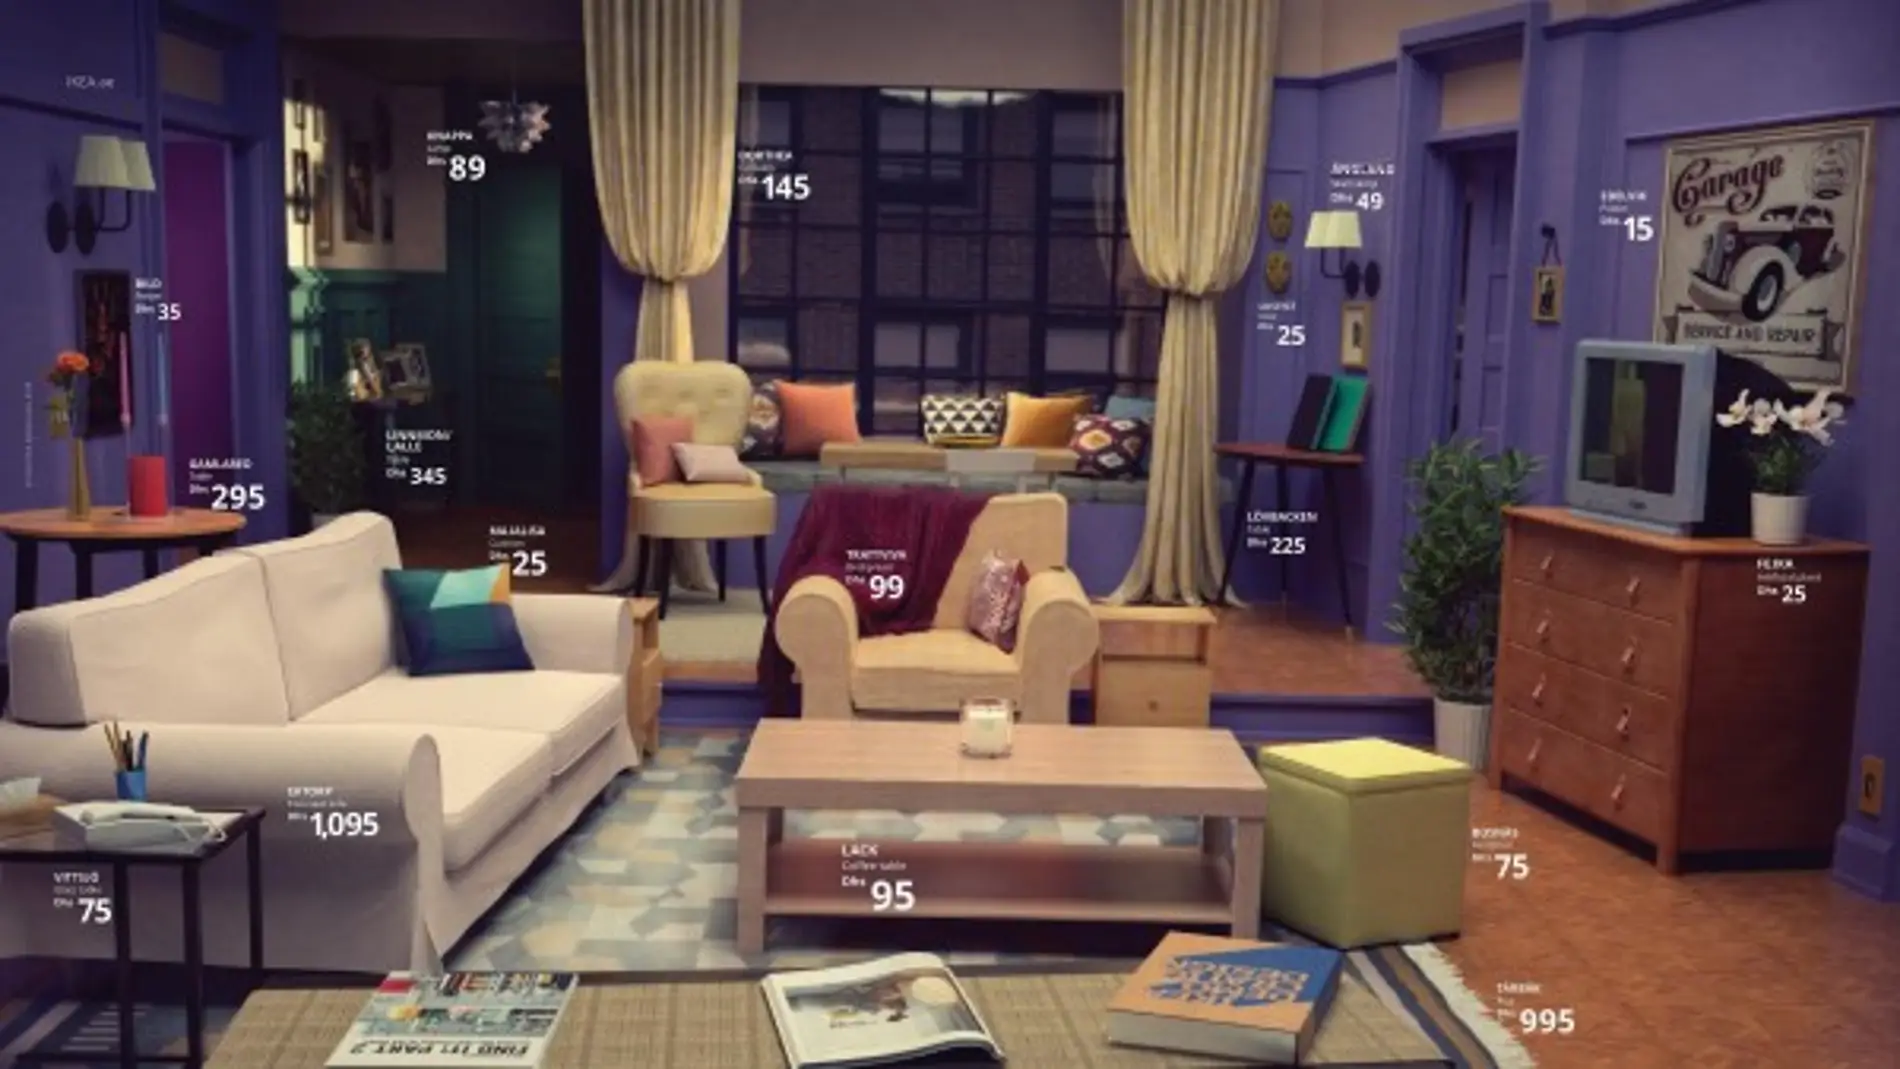 Ikea recrea el salón de 'Friends' title=